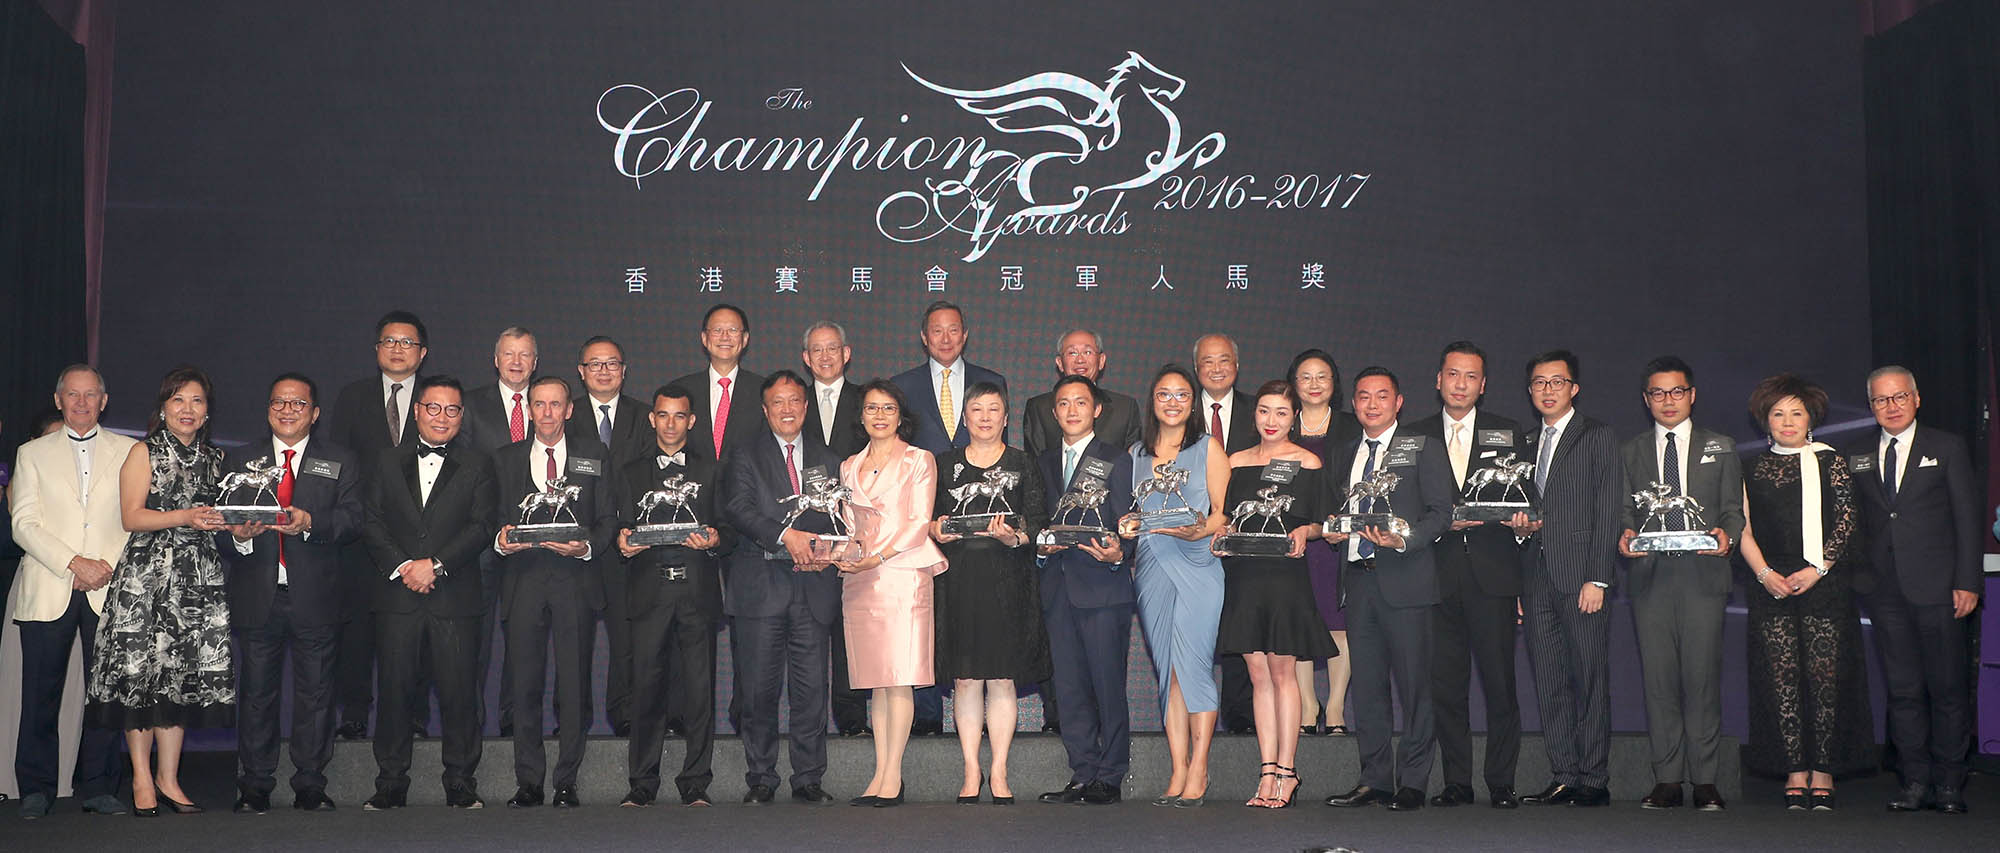 一眾馬會董事及行政總裁、各得獎馬匹的馬主、練馬師、騎師及嘉賓在頒獎禮上合照。